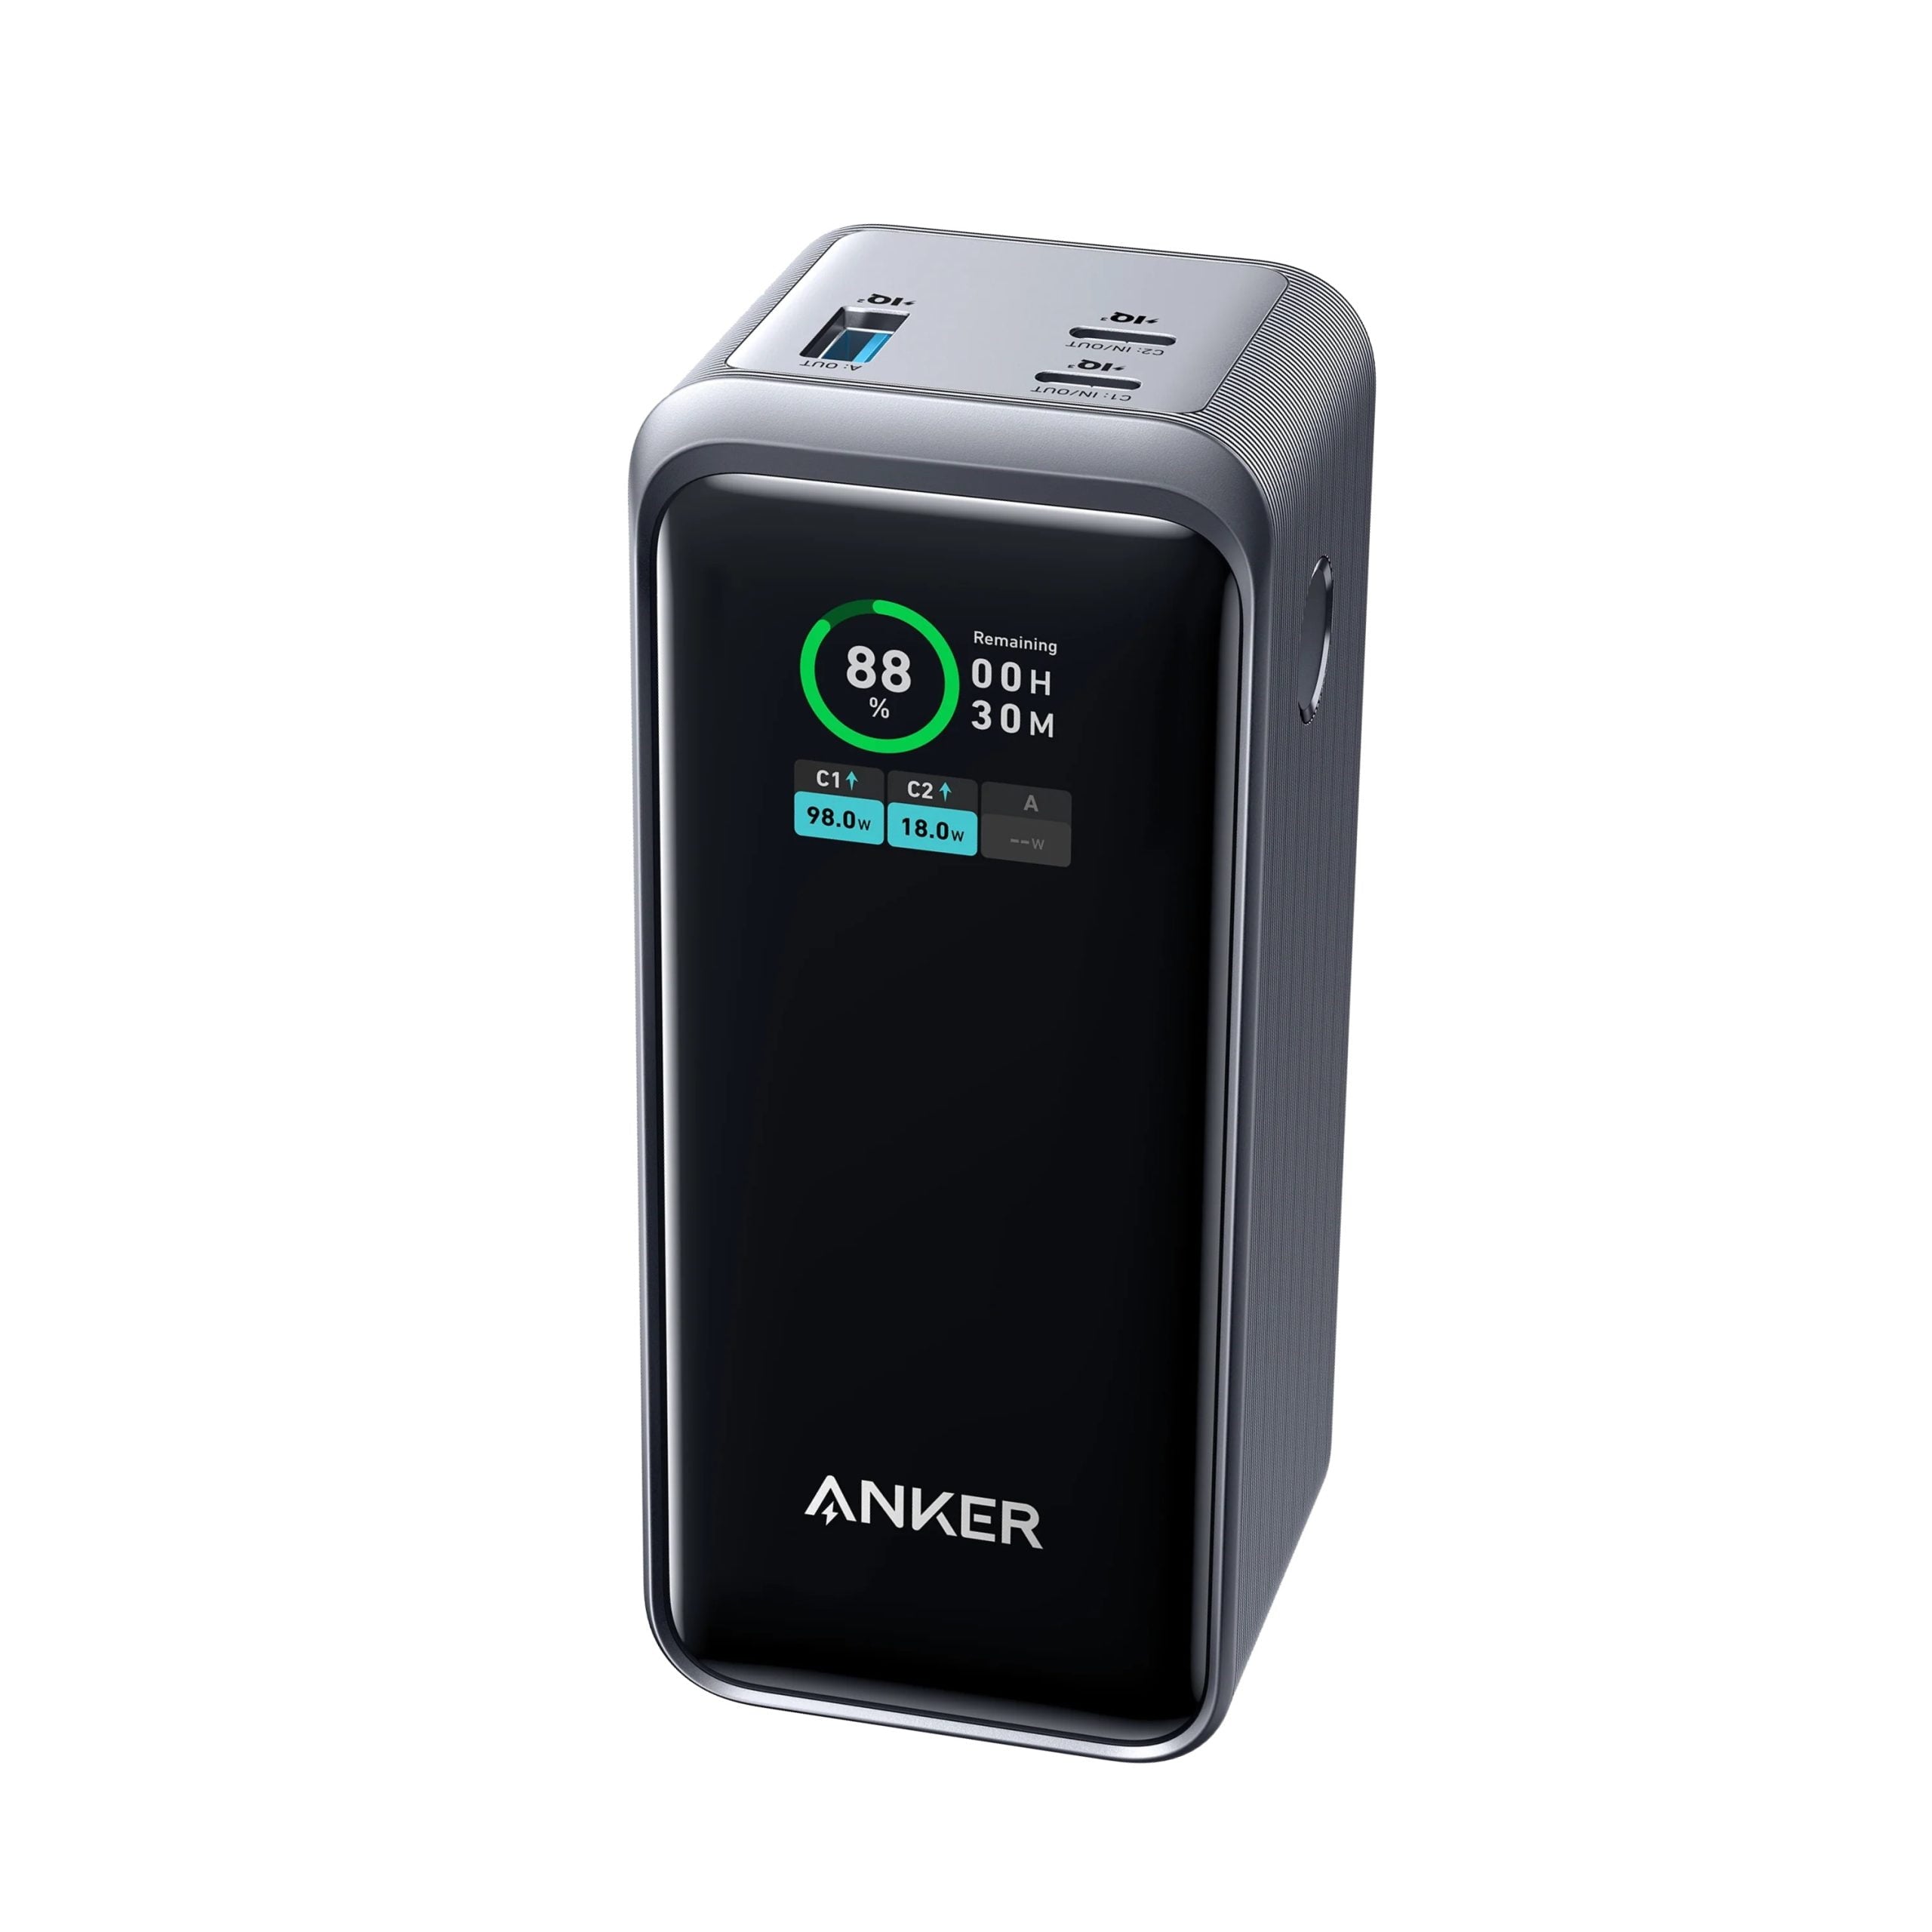 Anker Prime Power Bank / 200W Output / Smart Digital Display - Black